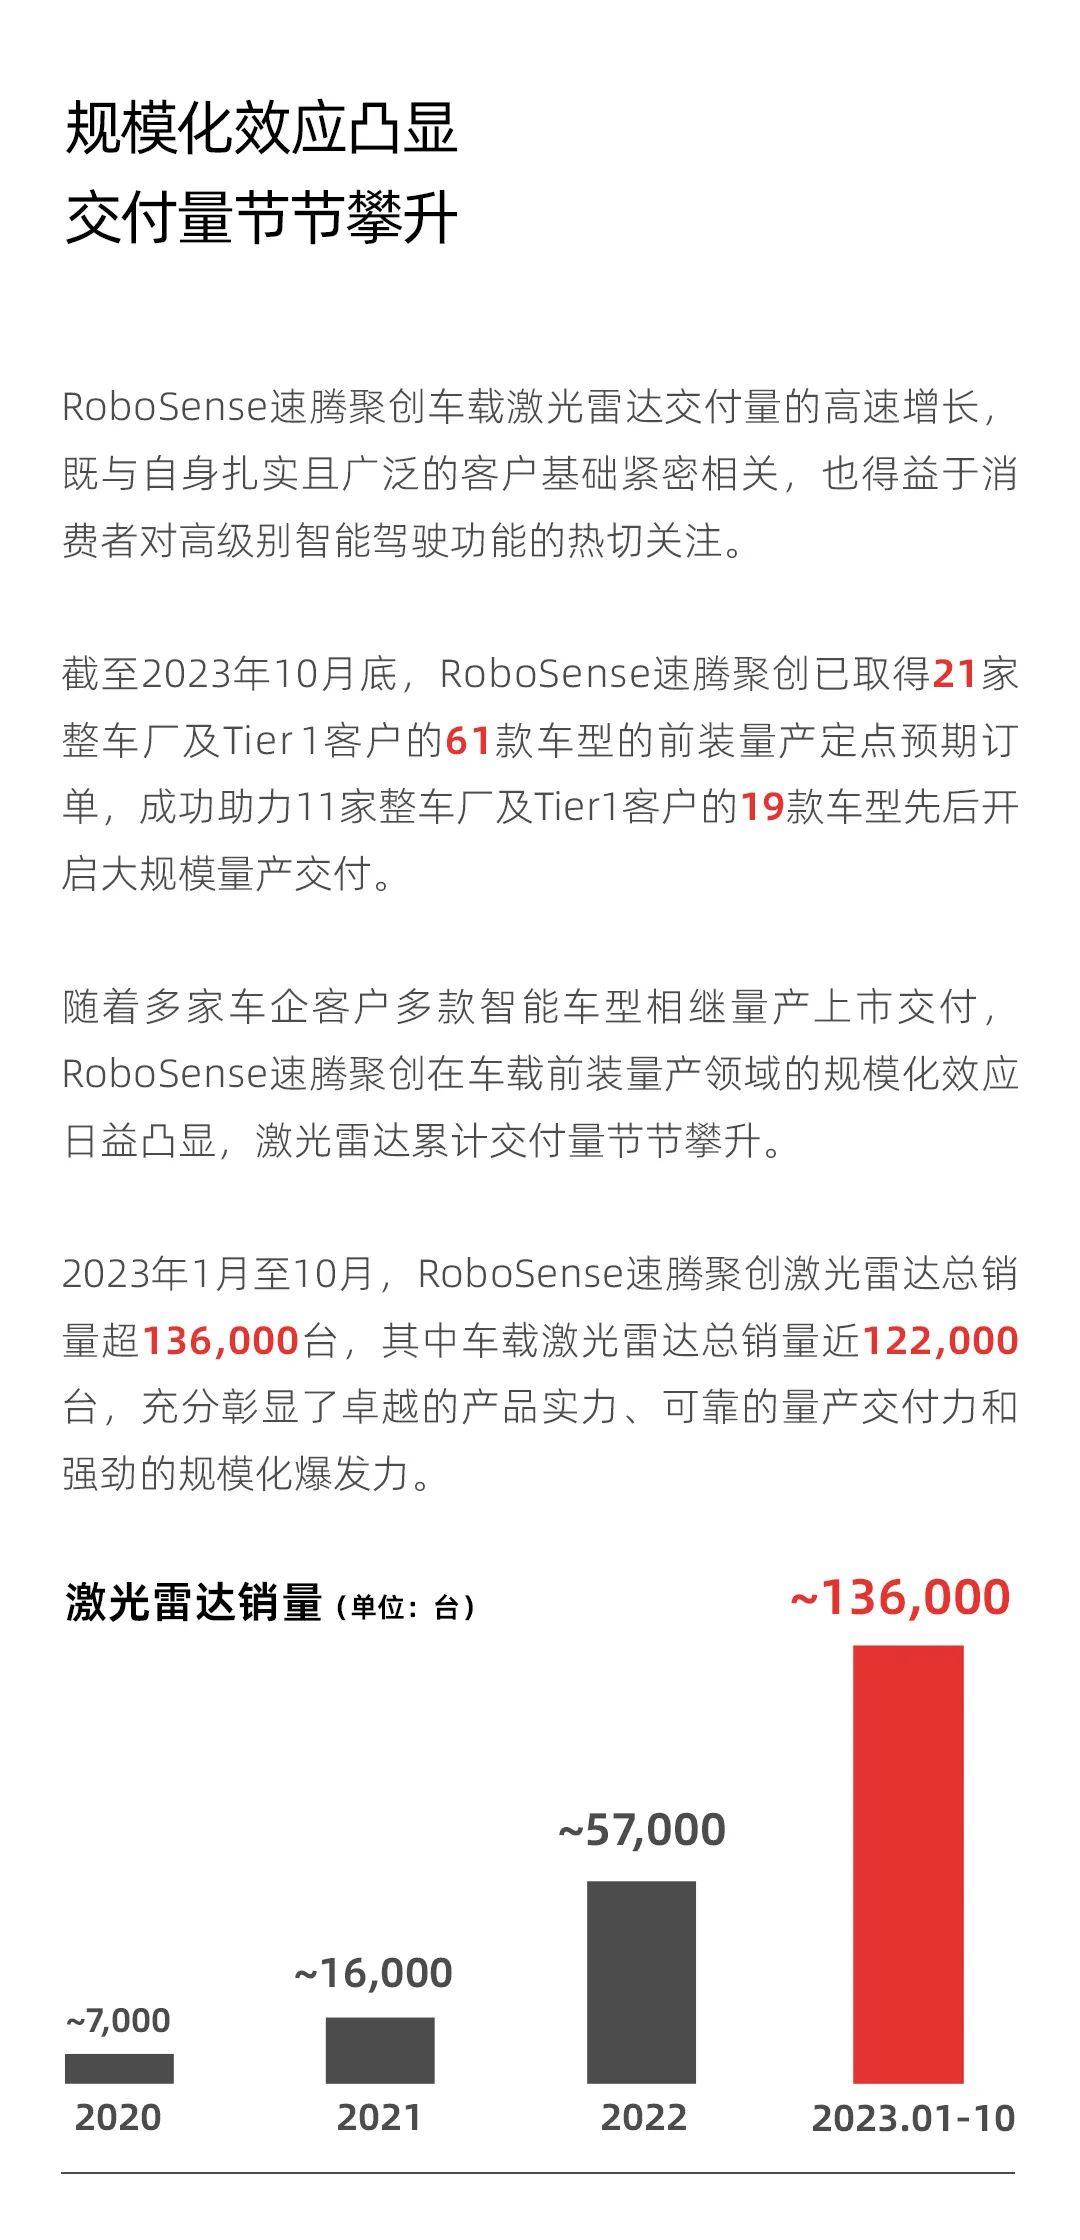 60天刷新纪录！RoboSense激光雷达单月销量近30,000台